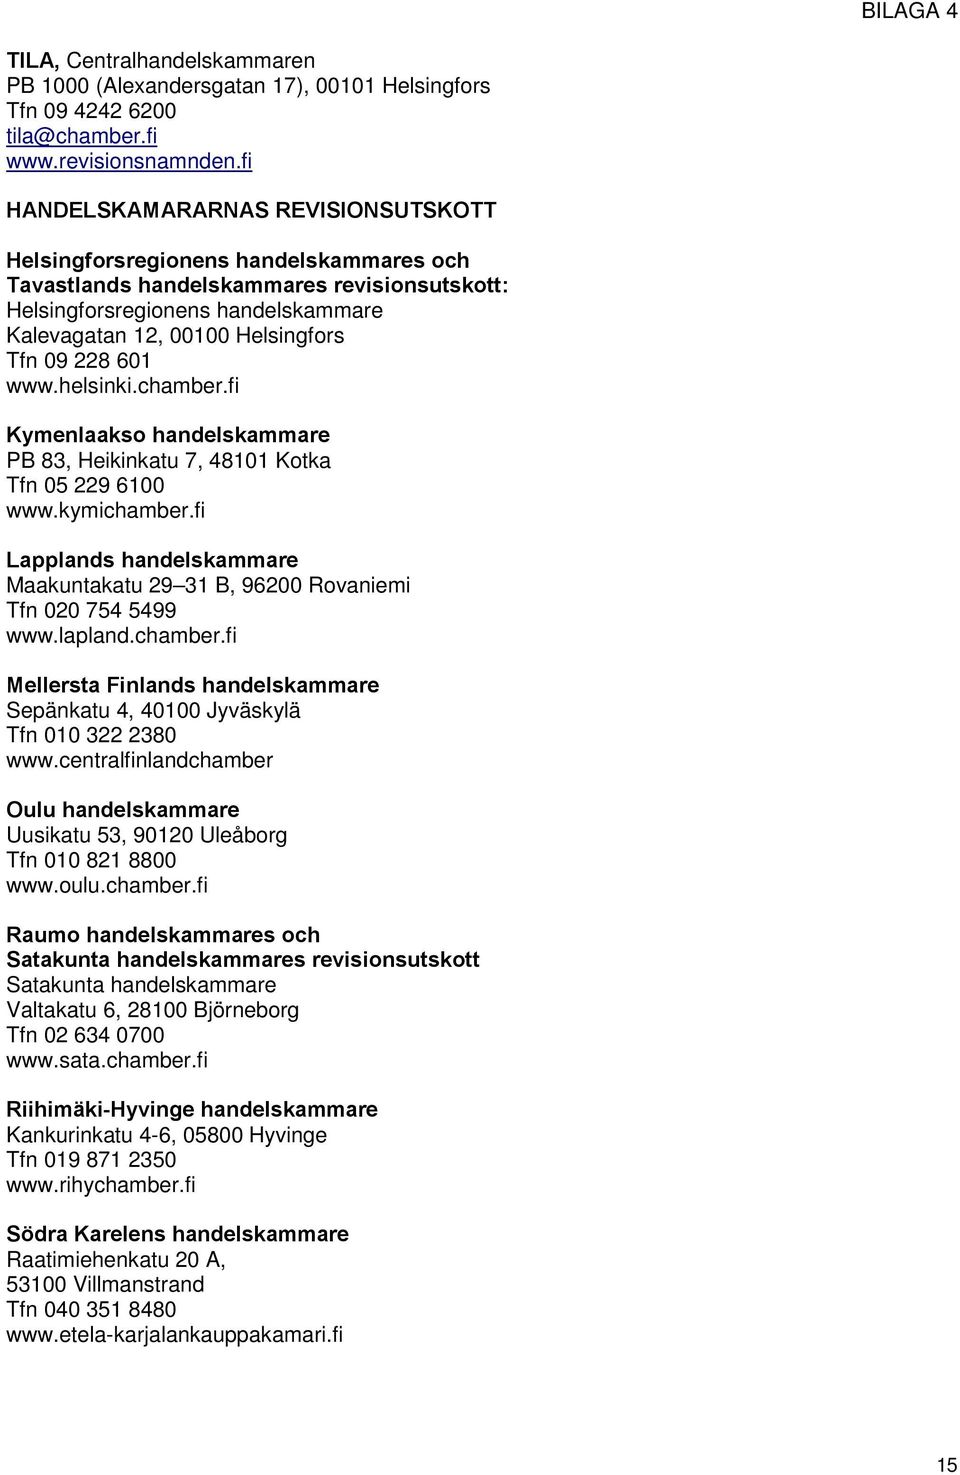 09 228 601 www.helsinki.chamber.fi Kymenlaakso handelskammare PB 83, Heikinkatu 7, 48101 Kotka Tfn 05 229 6100 www.kymichamber.